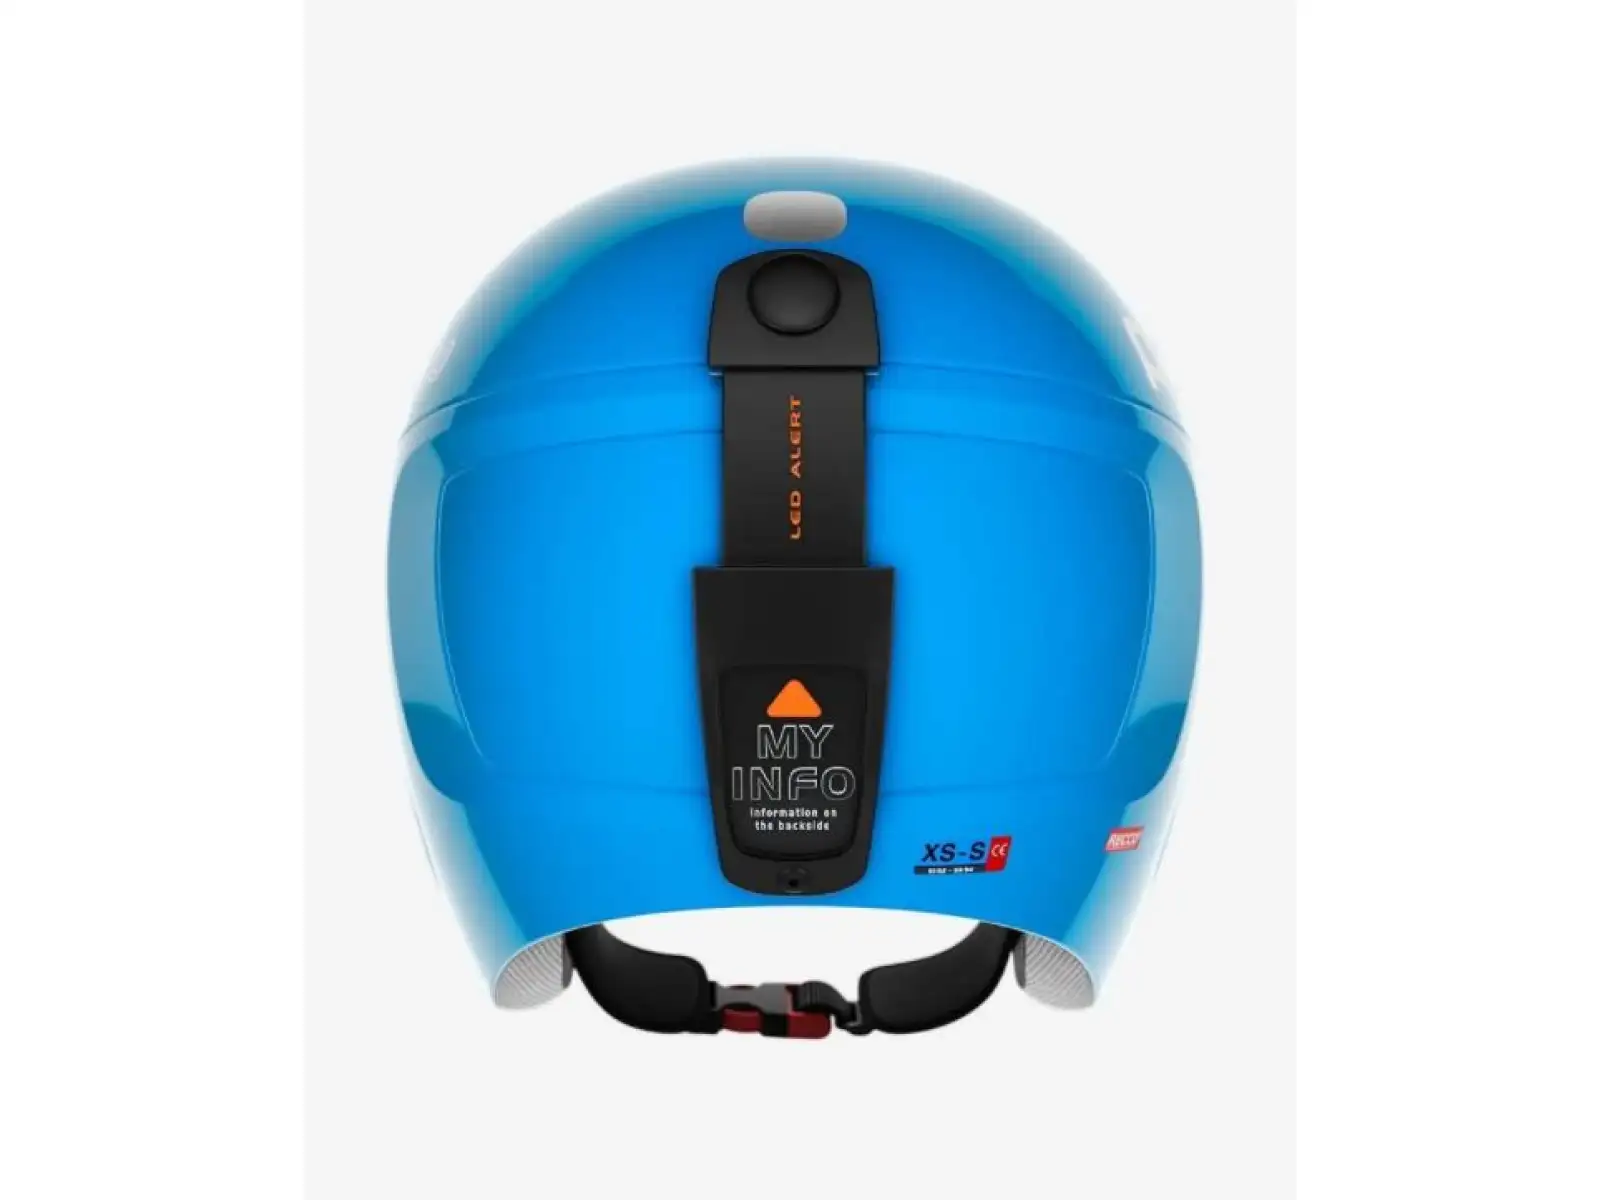 POC POCito Skull dětská lyžařská helma fluorescent blue adjustable vel. Uni (51-54 cm)